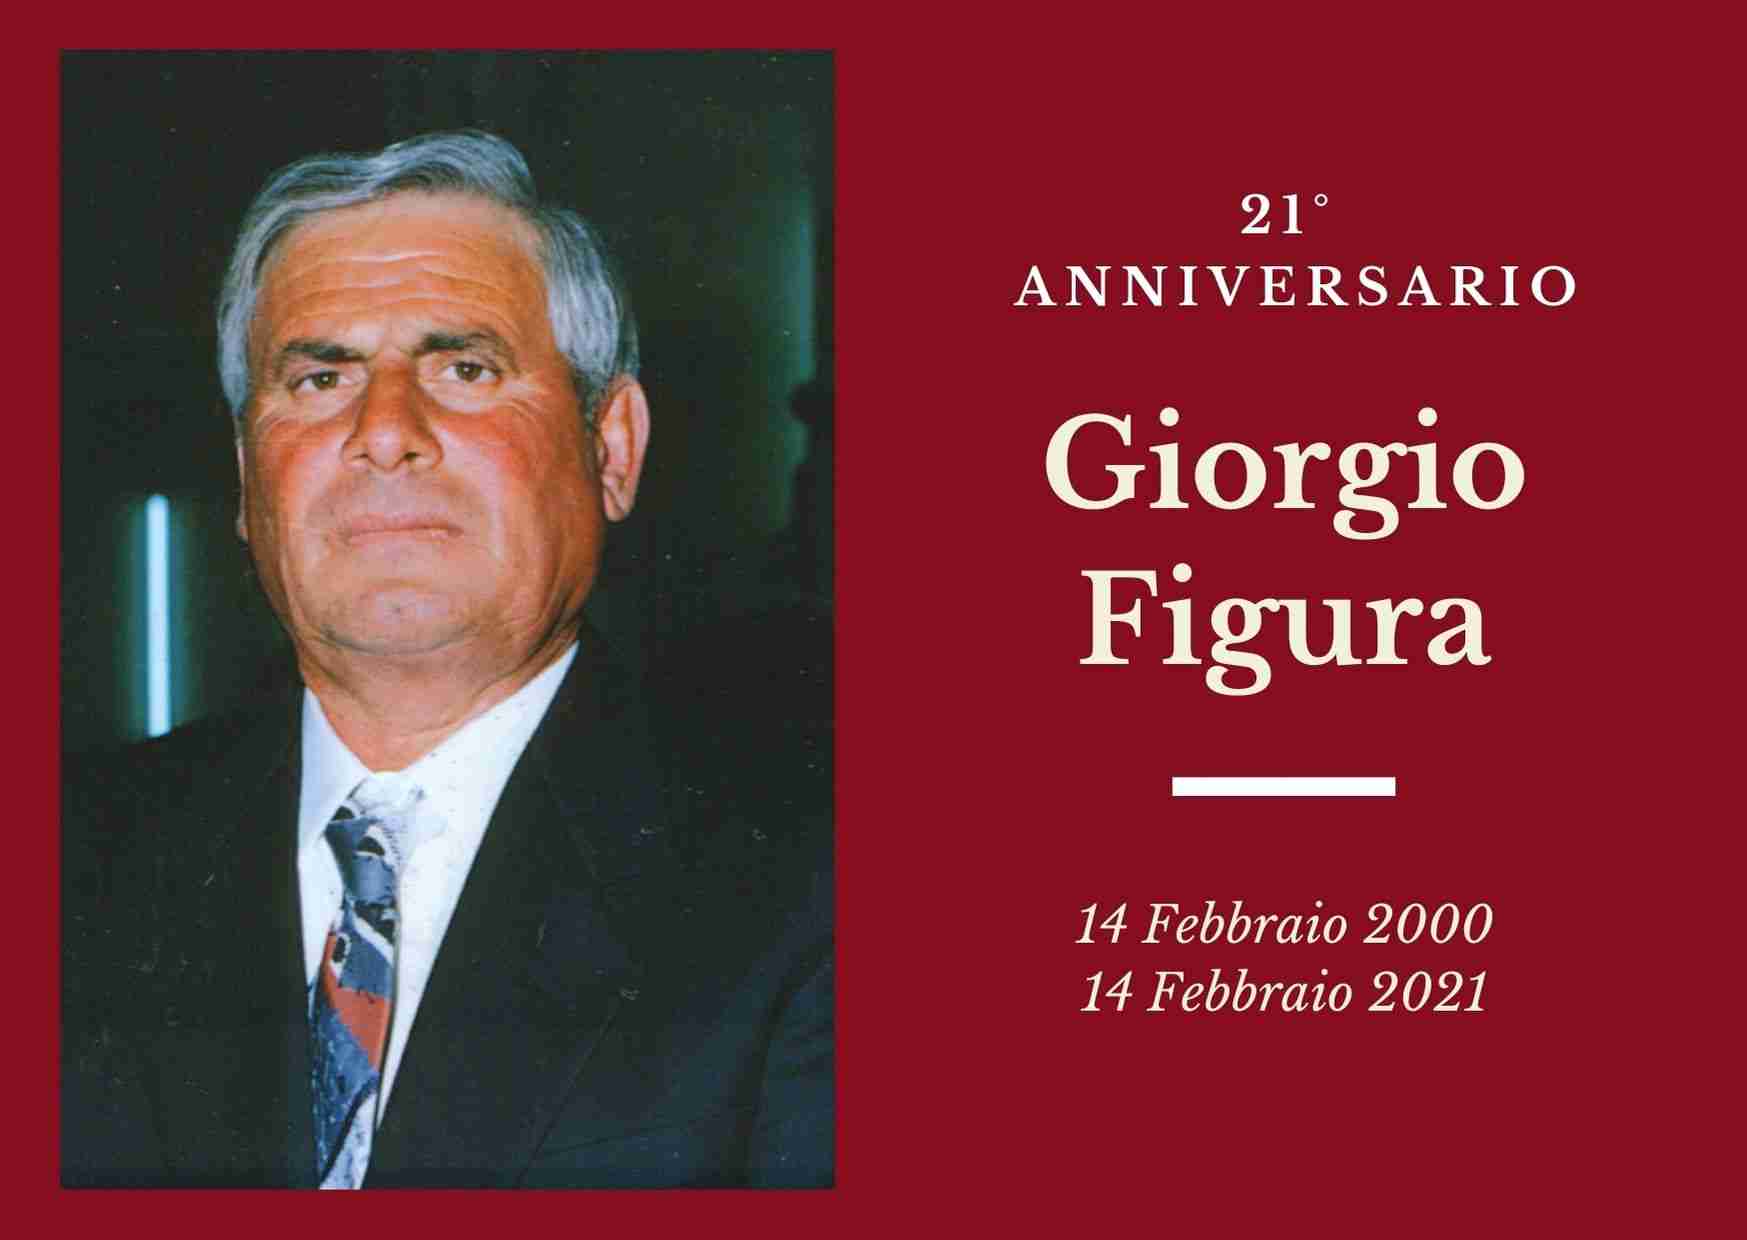 Necrologio: ricorre oggi il 21° anniversario di Giorgio Figura